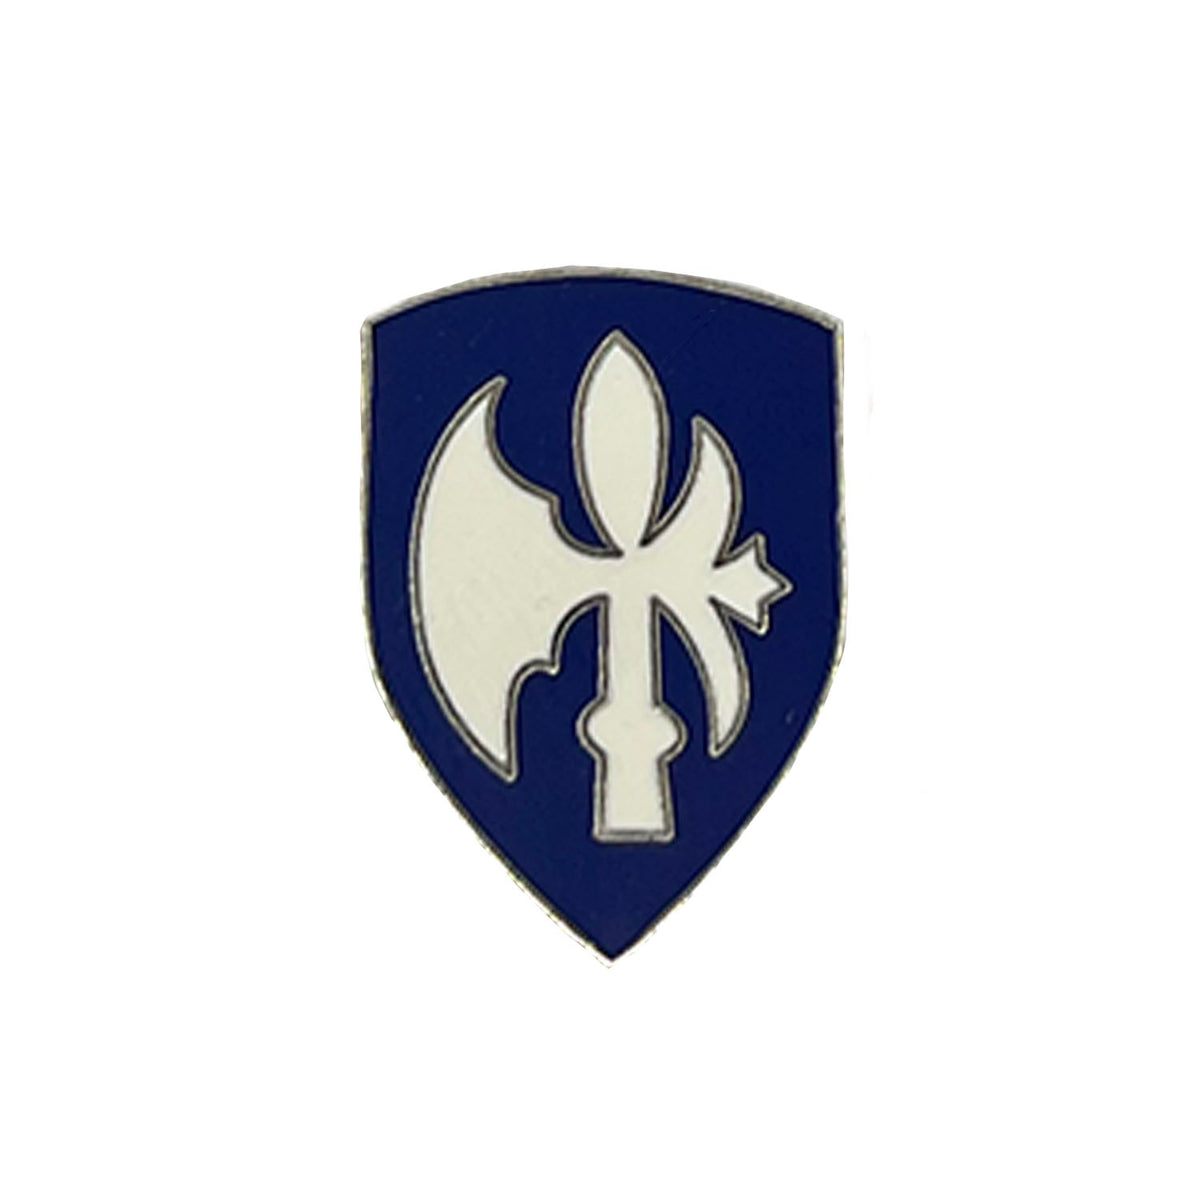 65th Division Metal Pin